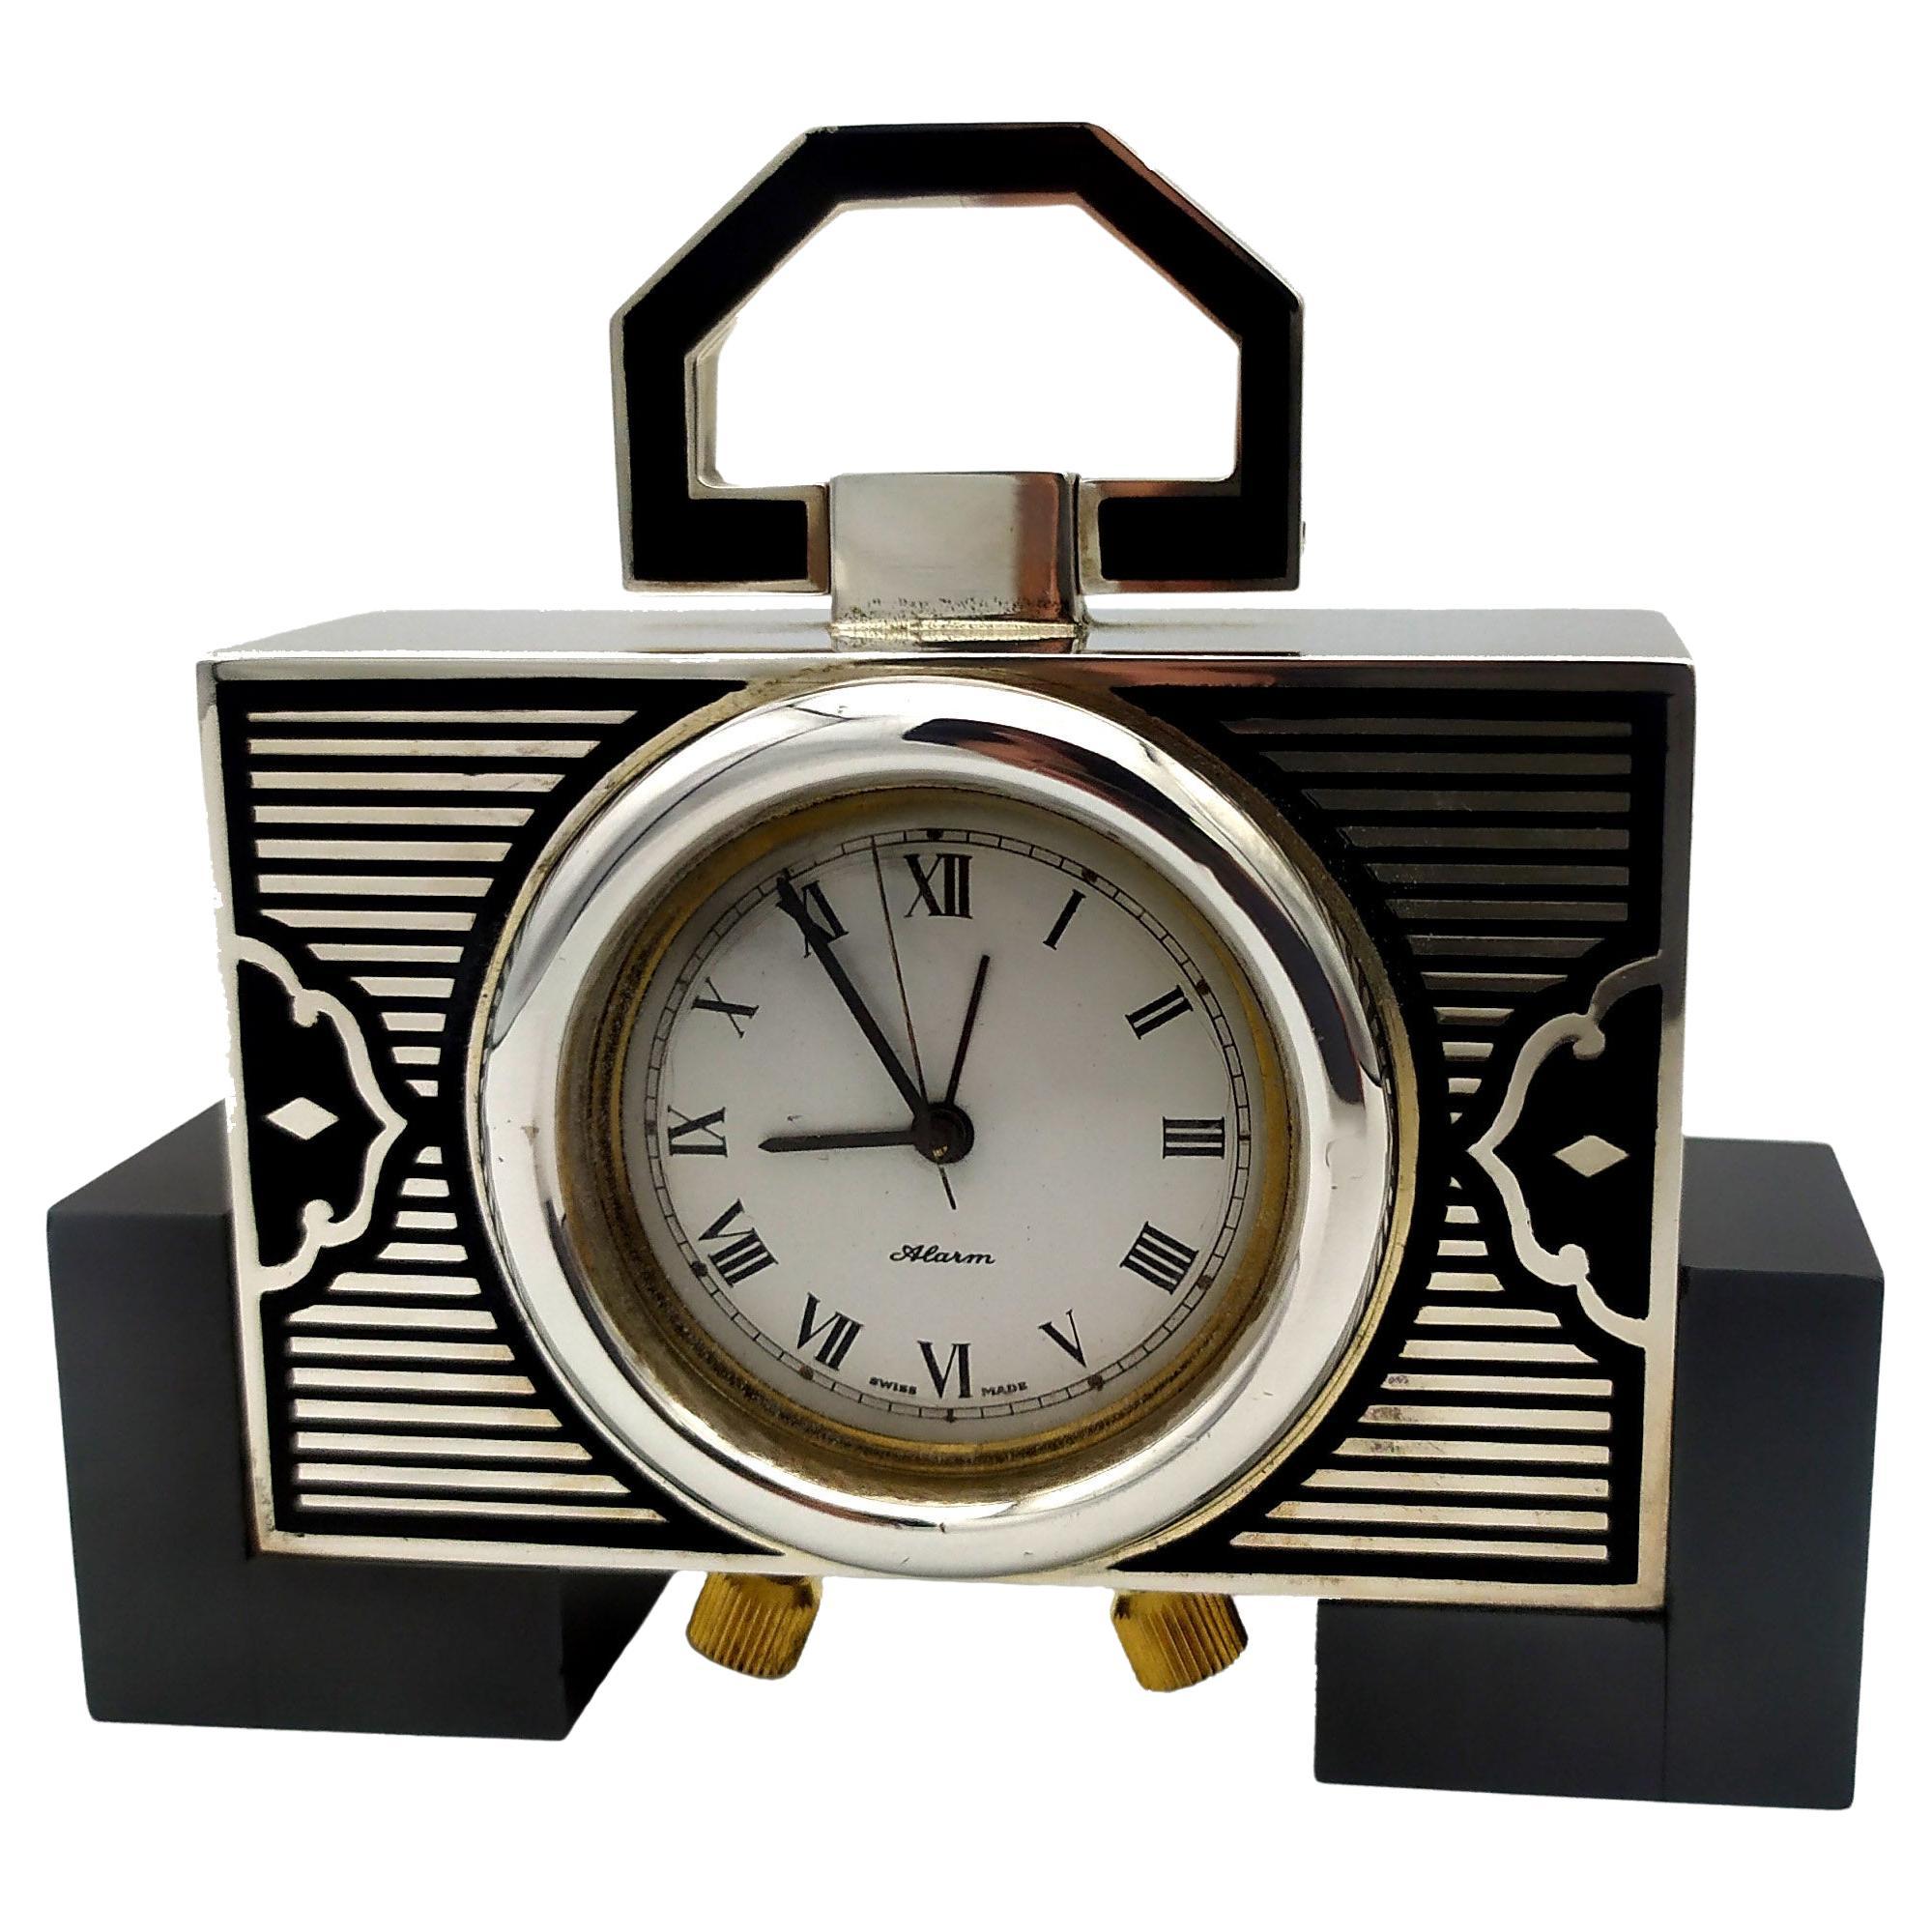 Salimbeni Table Clock Travel Sterling Silver Art Deco Fire Enamel in Black